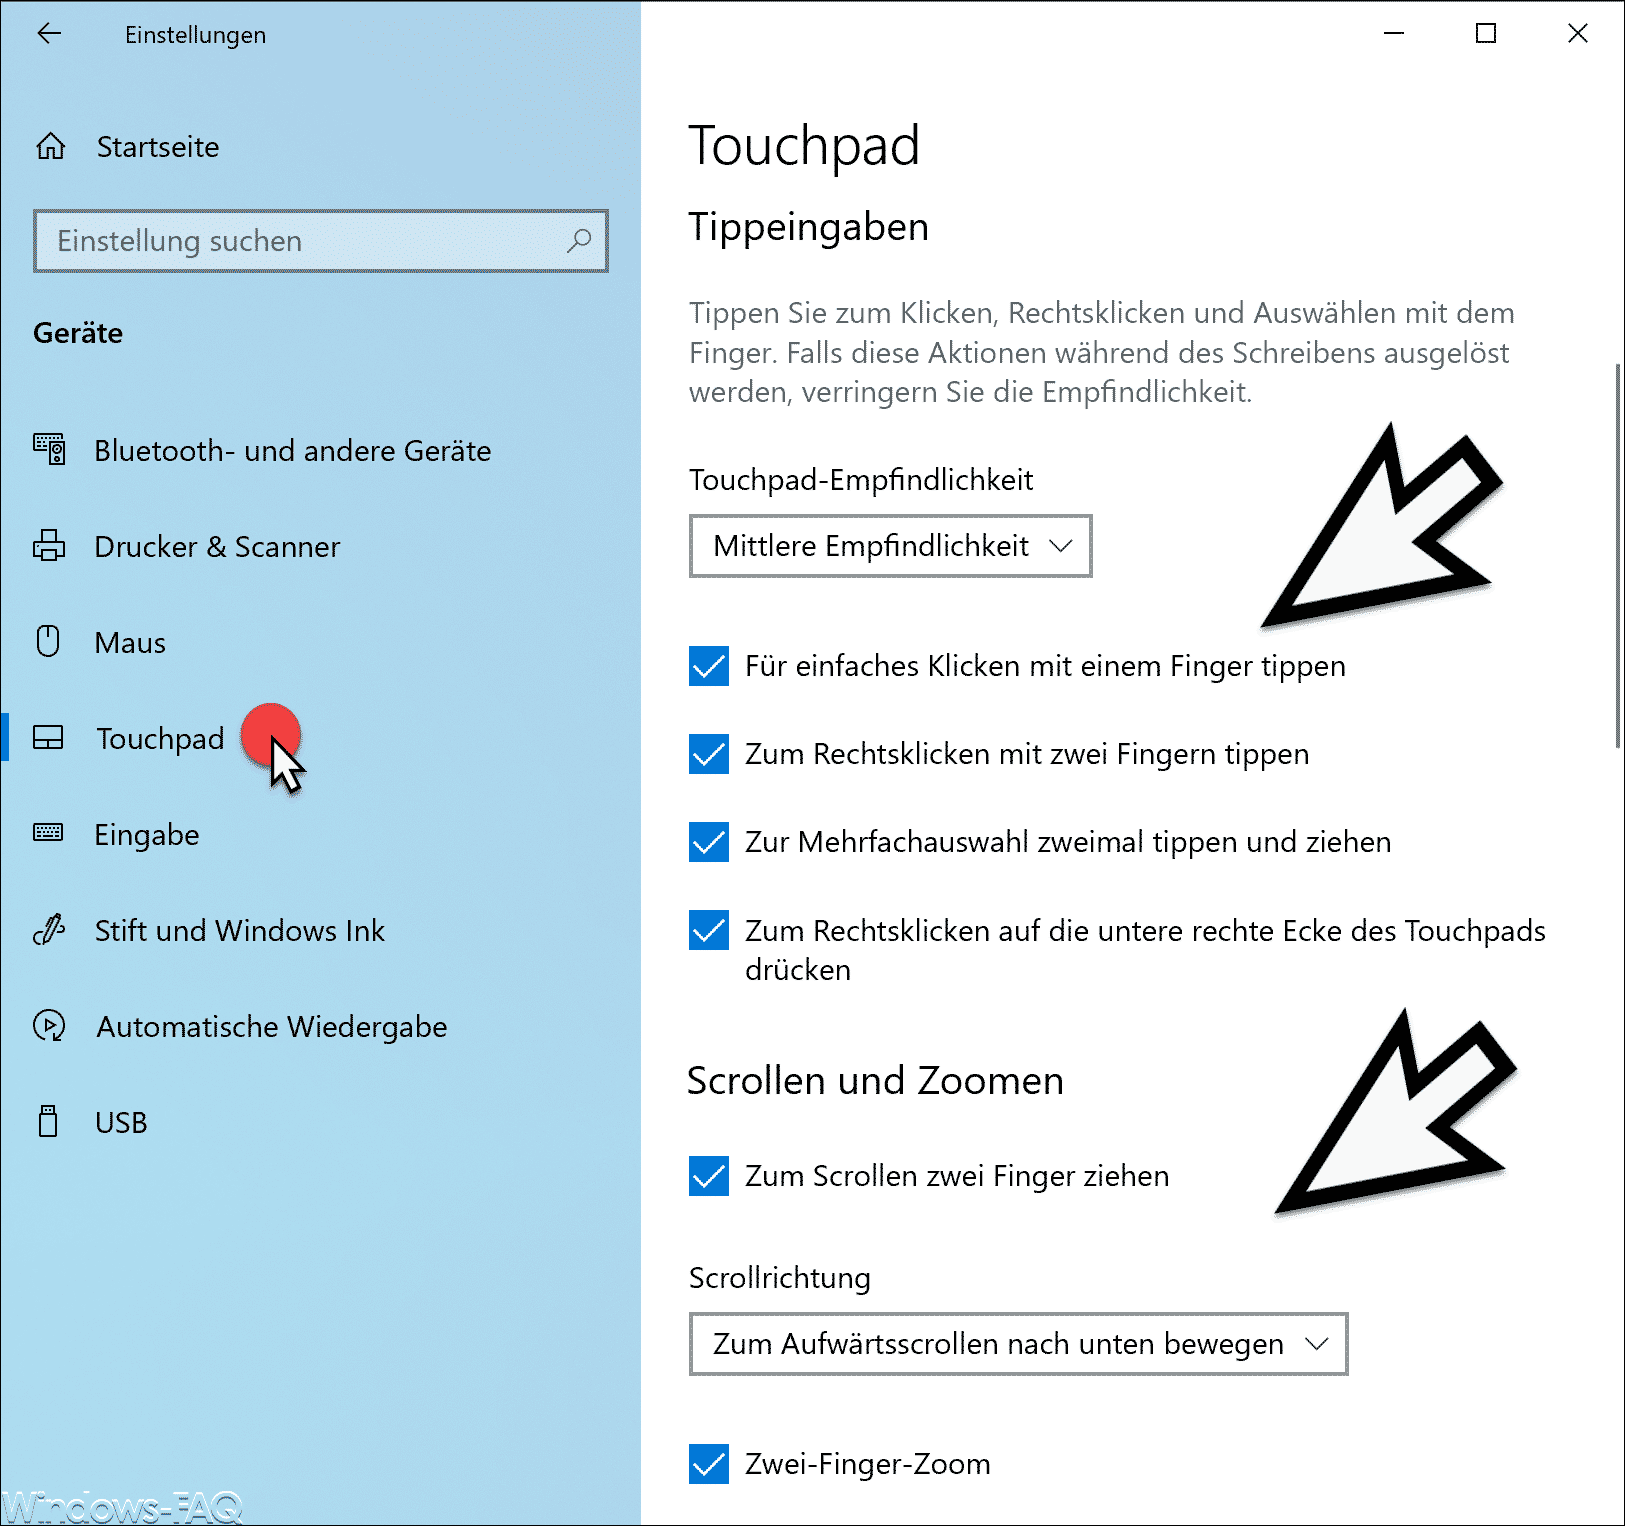 Überprüfen Sie die Touchpad-Einstellungen in den Windows 10 Systemeinstellungen.
Stellen Sie sicher, dass das Touchpad aktiviert ist.